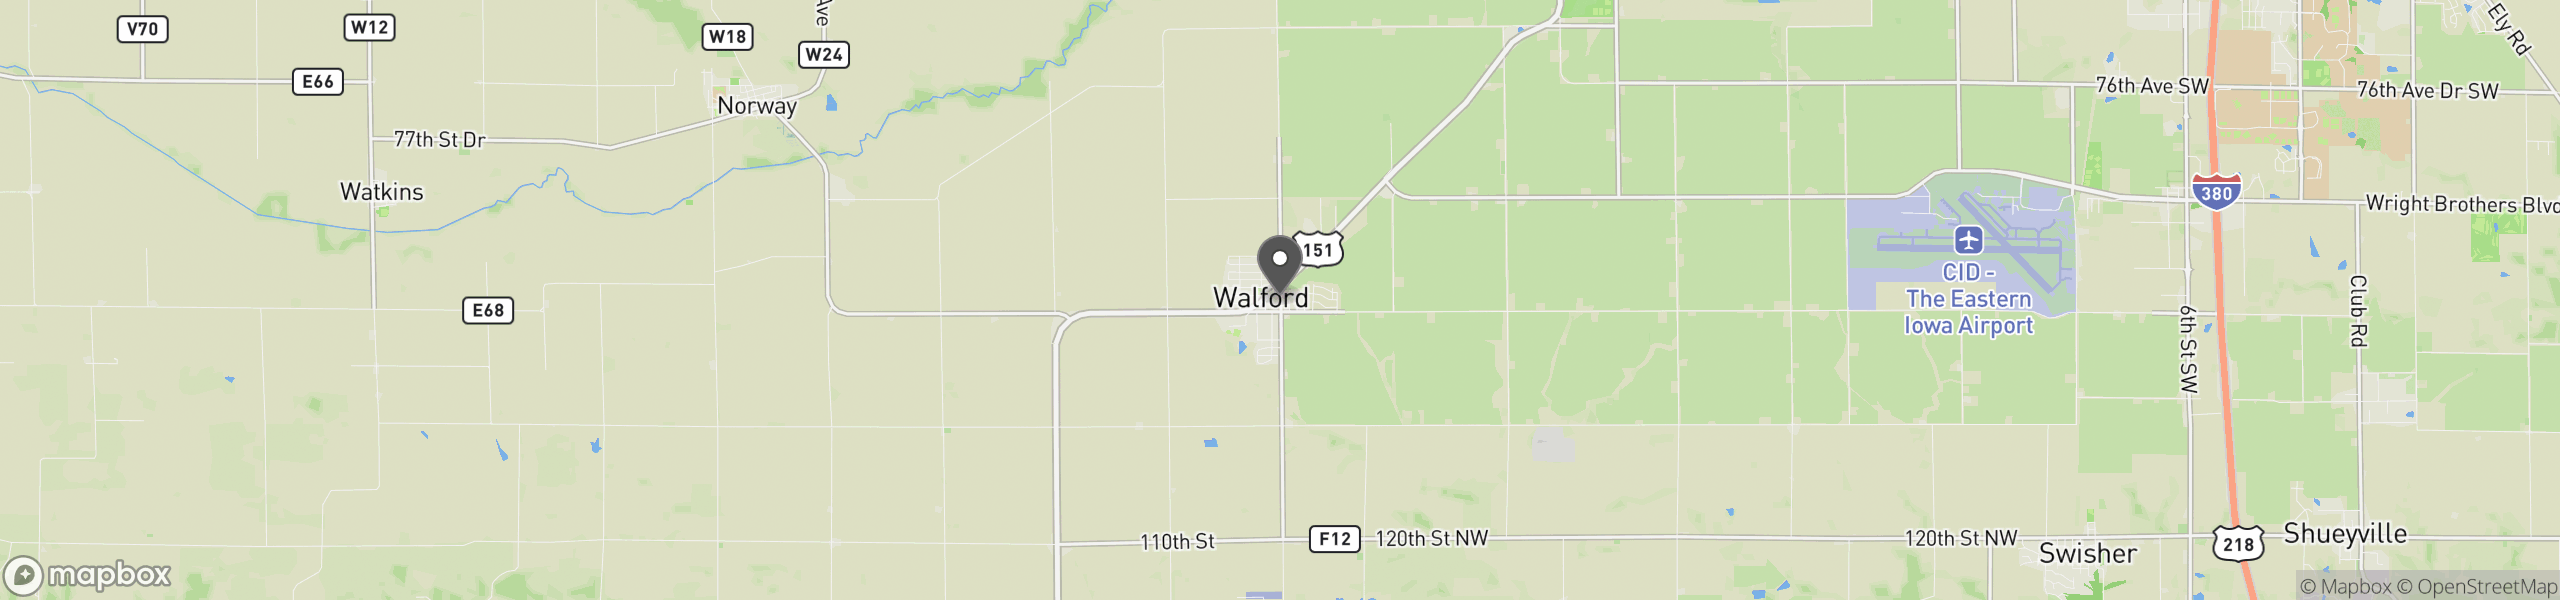 Walford, IA 52351